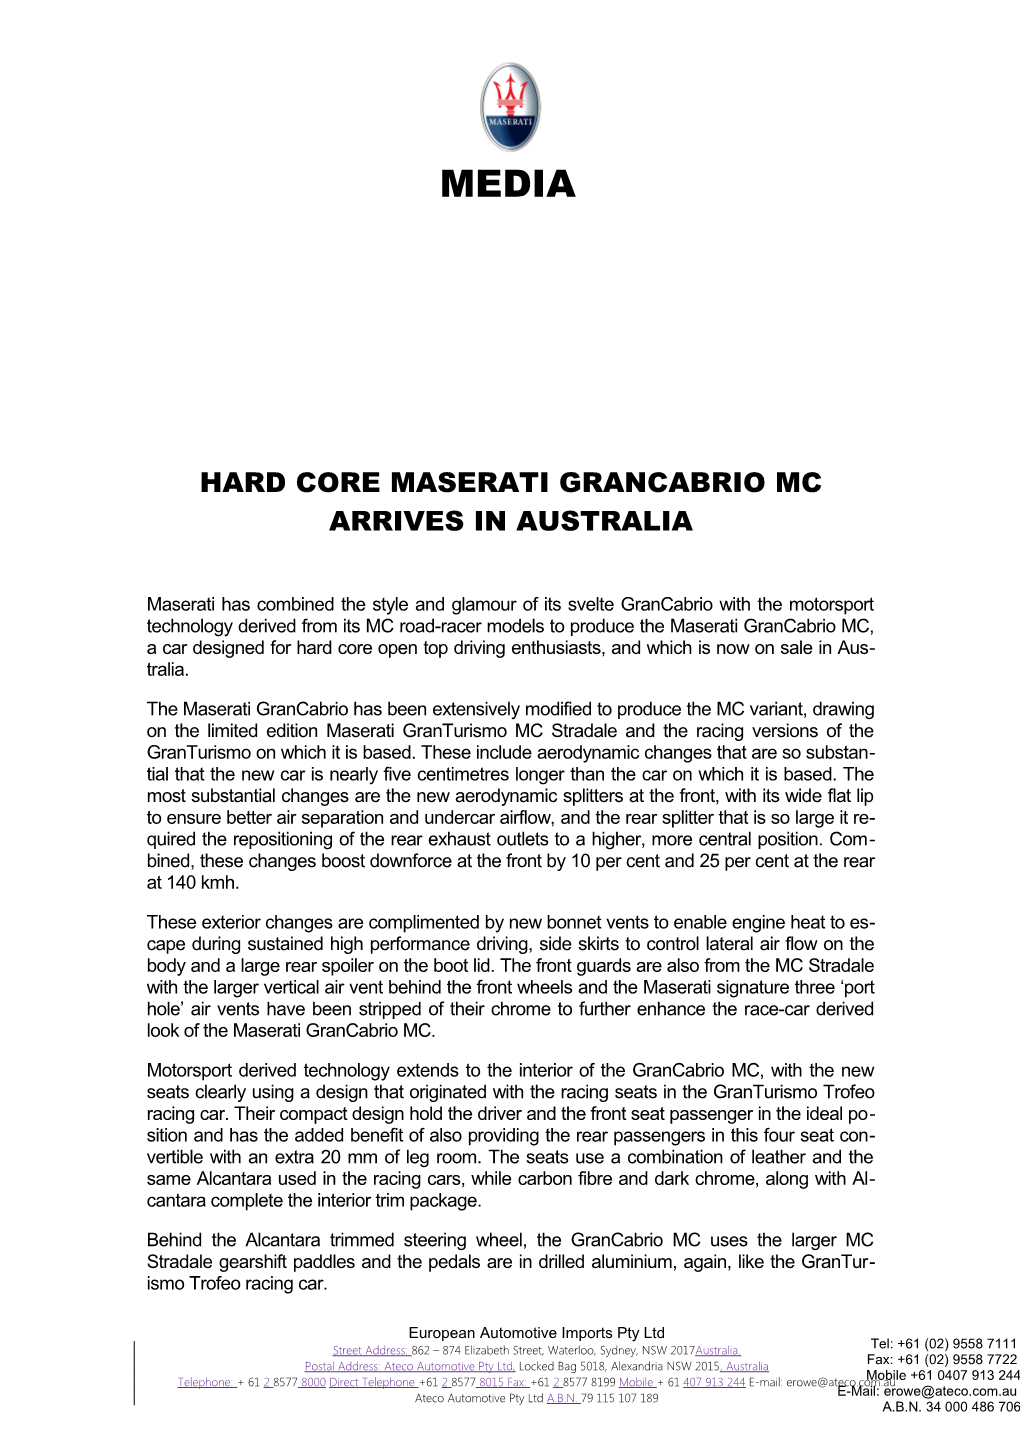 Hard Core Maserati Grancabrio Mc Arrives in Australia